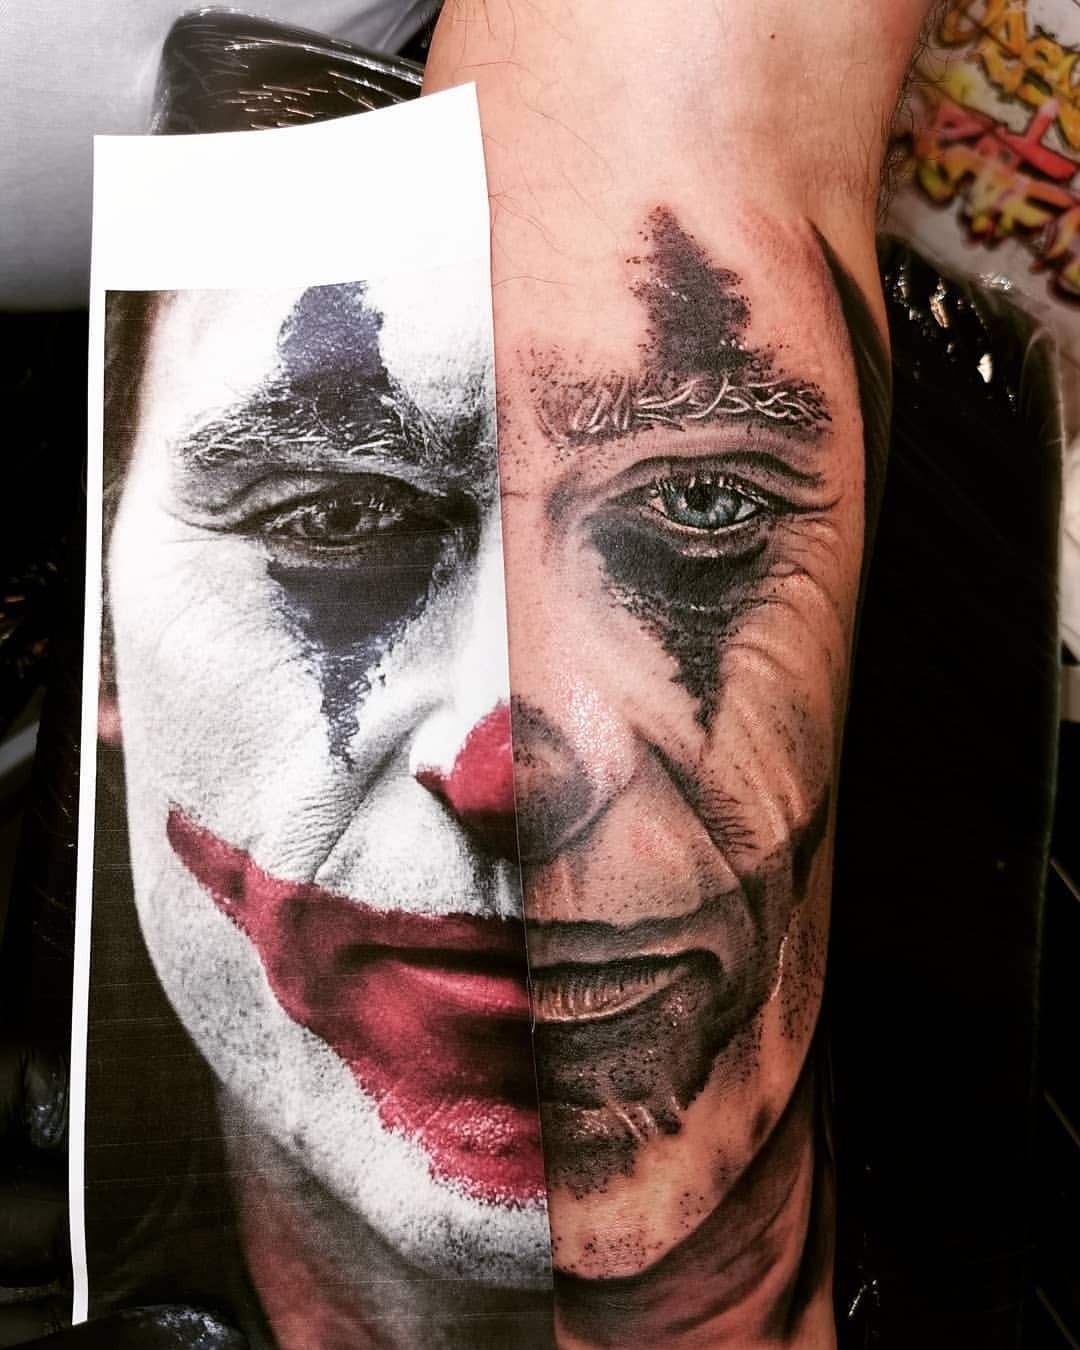 Joaquin Phoenix as The Joker tattooed on the inner